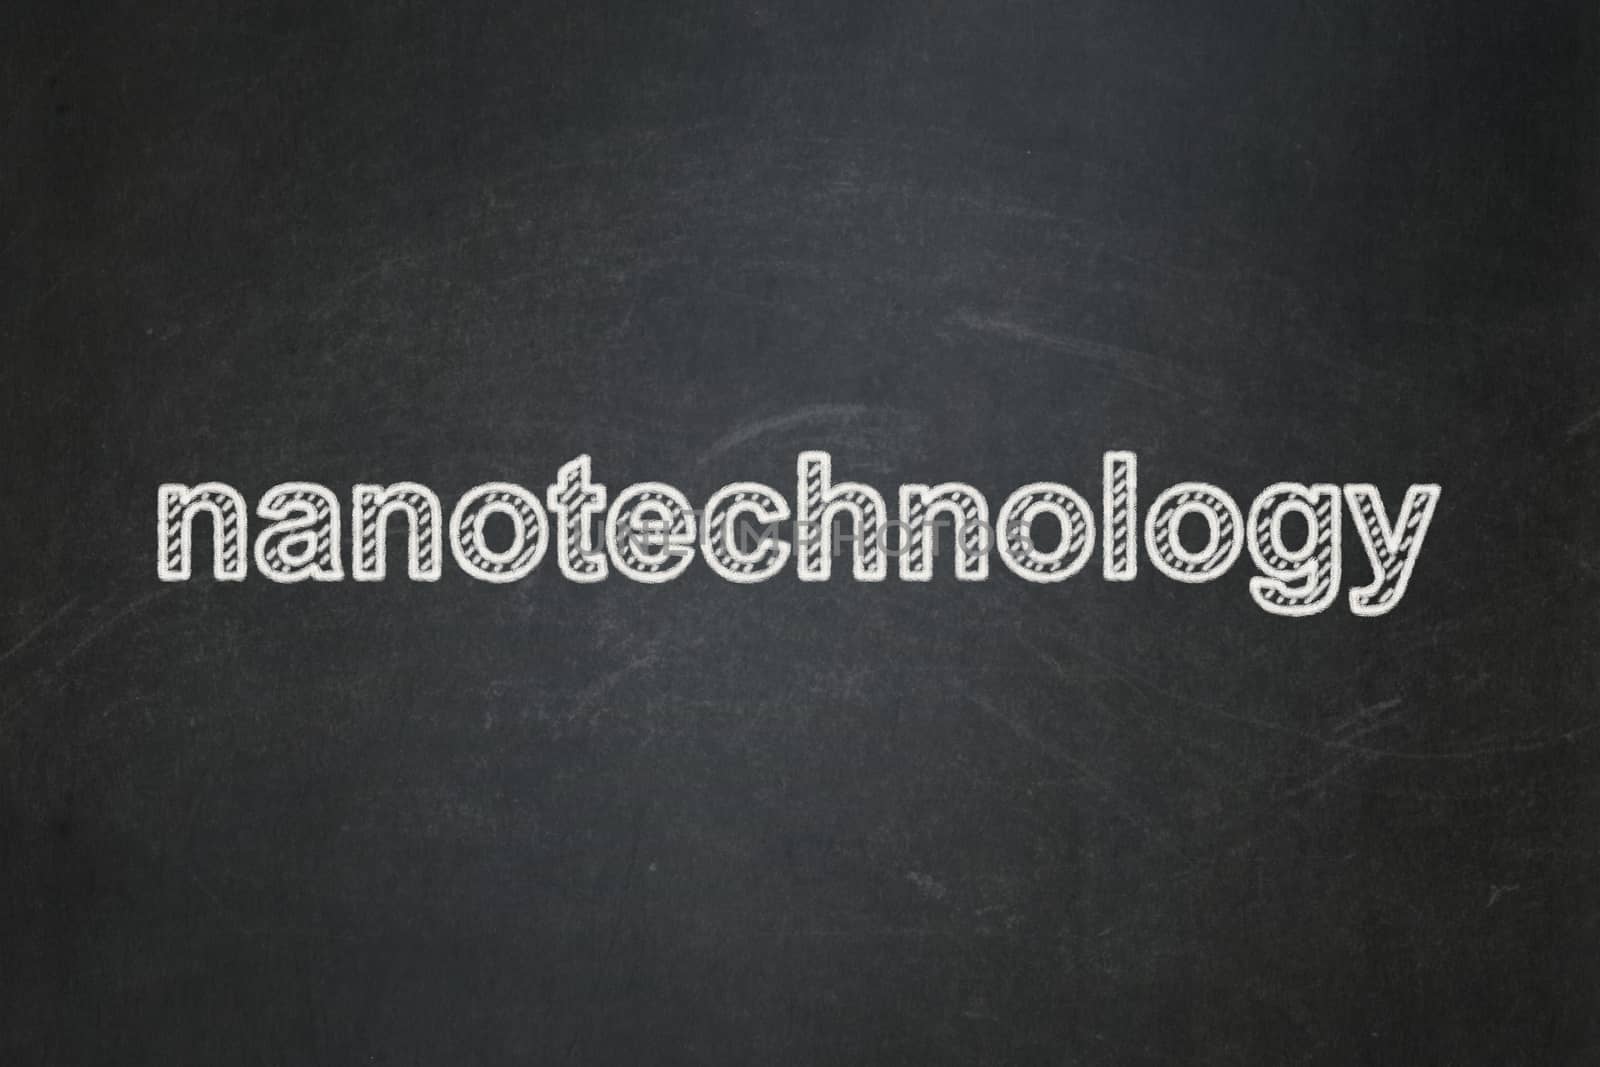 Science concept: Nanotechnology on chalkboard background by maxkabakov